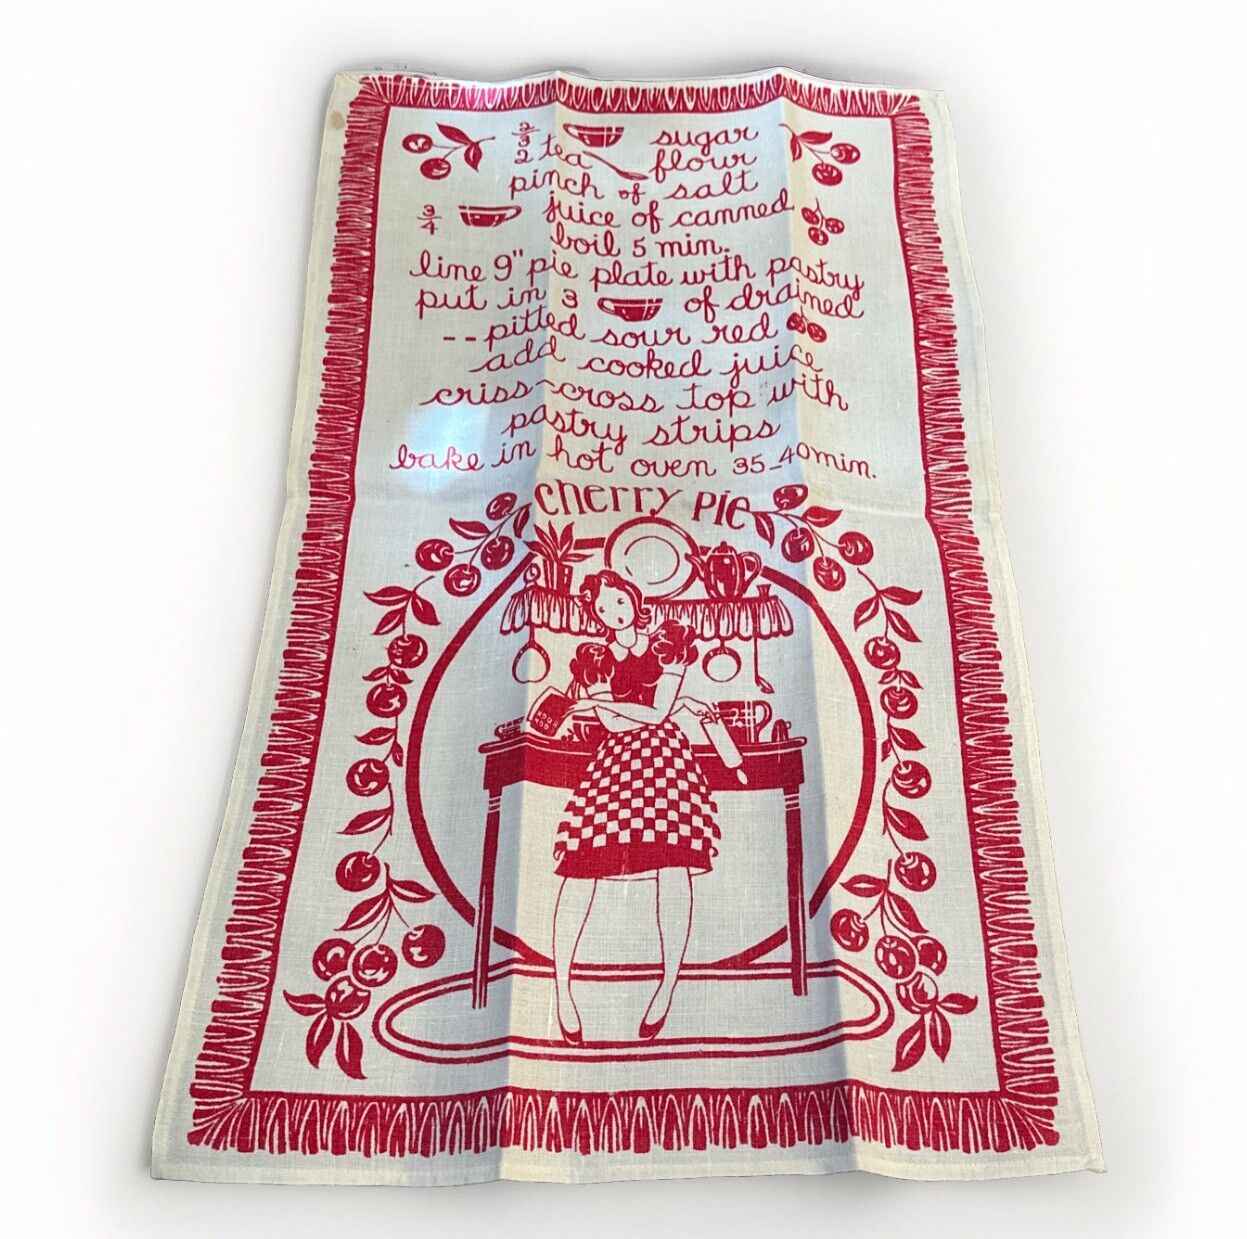 Vintage Linen Leacroft Handprints 1950’s Tea Kitchen Towel Cherry Pie New 1stain